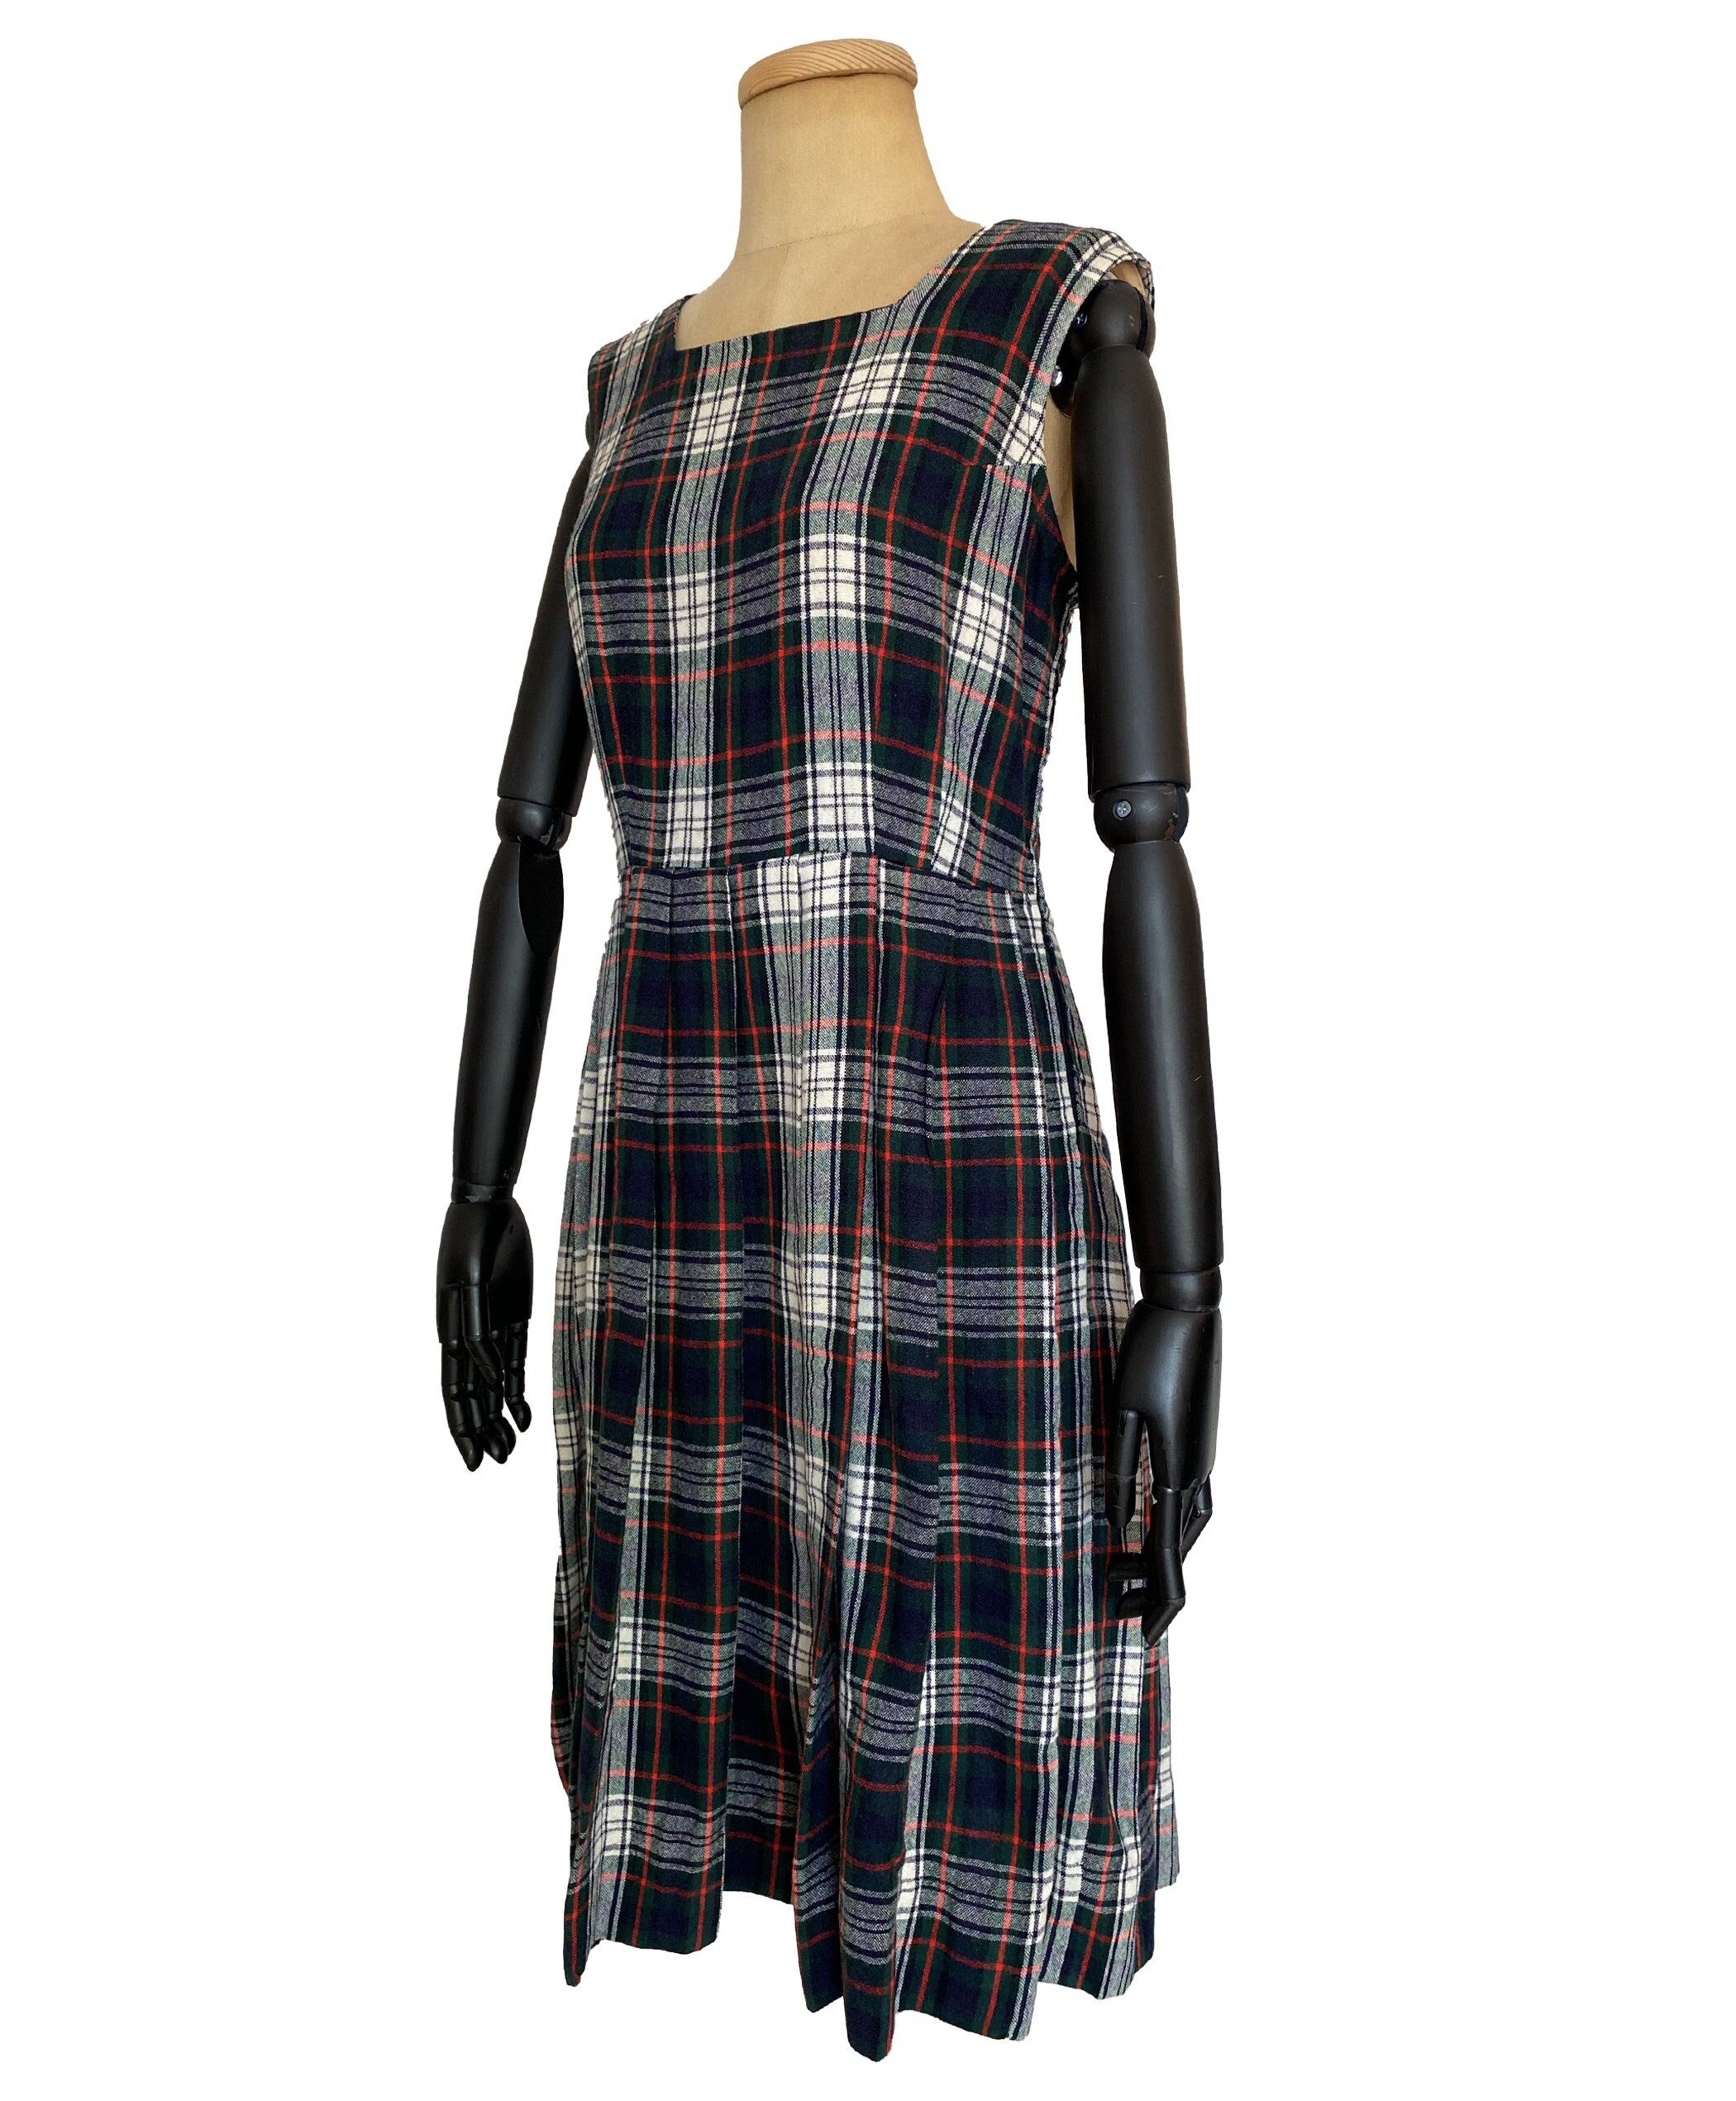 Vintage 1960s Dress by Hanold 60s Plaid School Uniform Dress M - Etsy